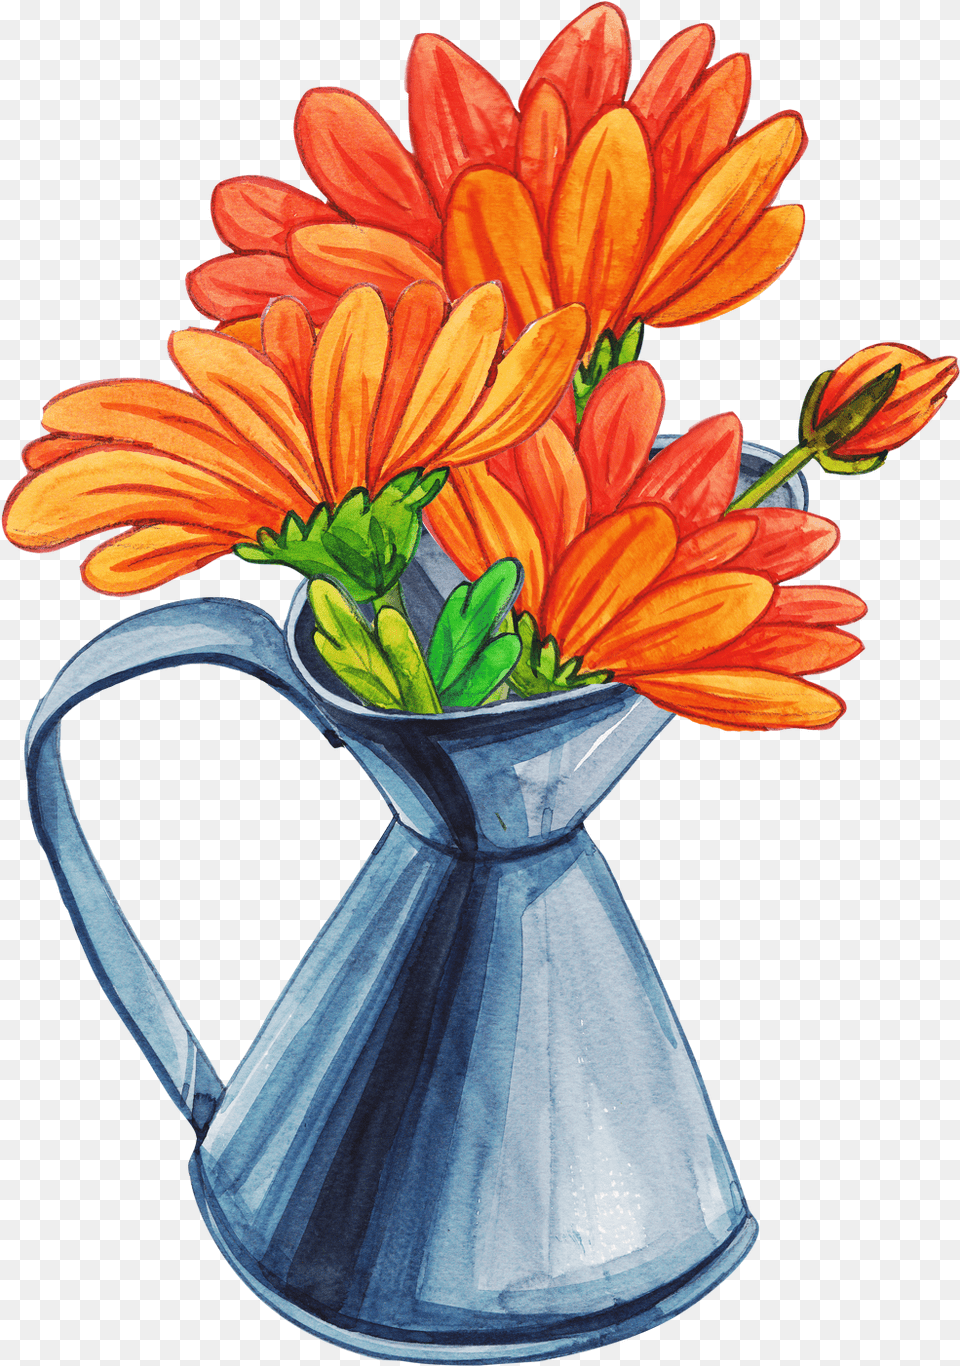 Flower Vase Cartoon Flower Vase Cartoon, Flower Arrangement, Flower Bouquet, Plant, Daisy Free Transparent Png